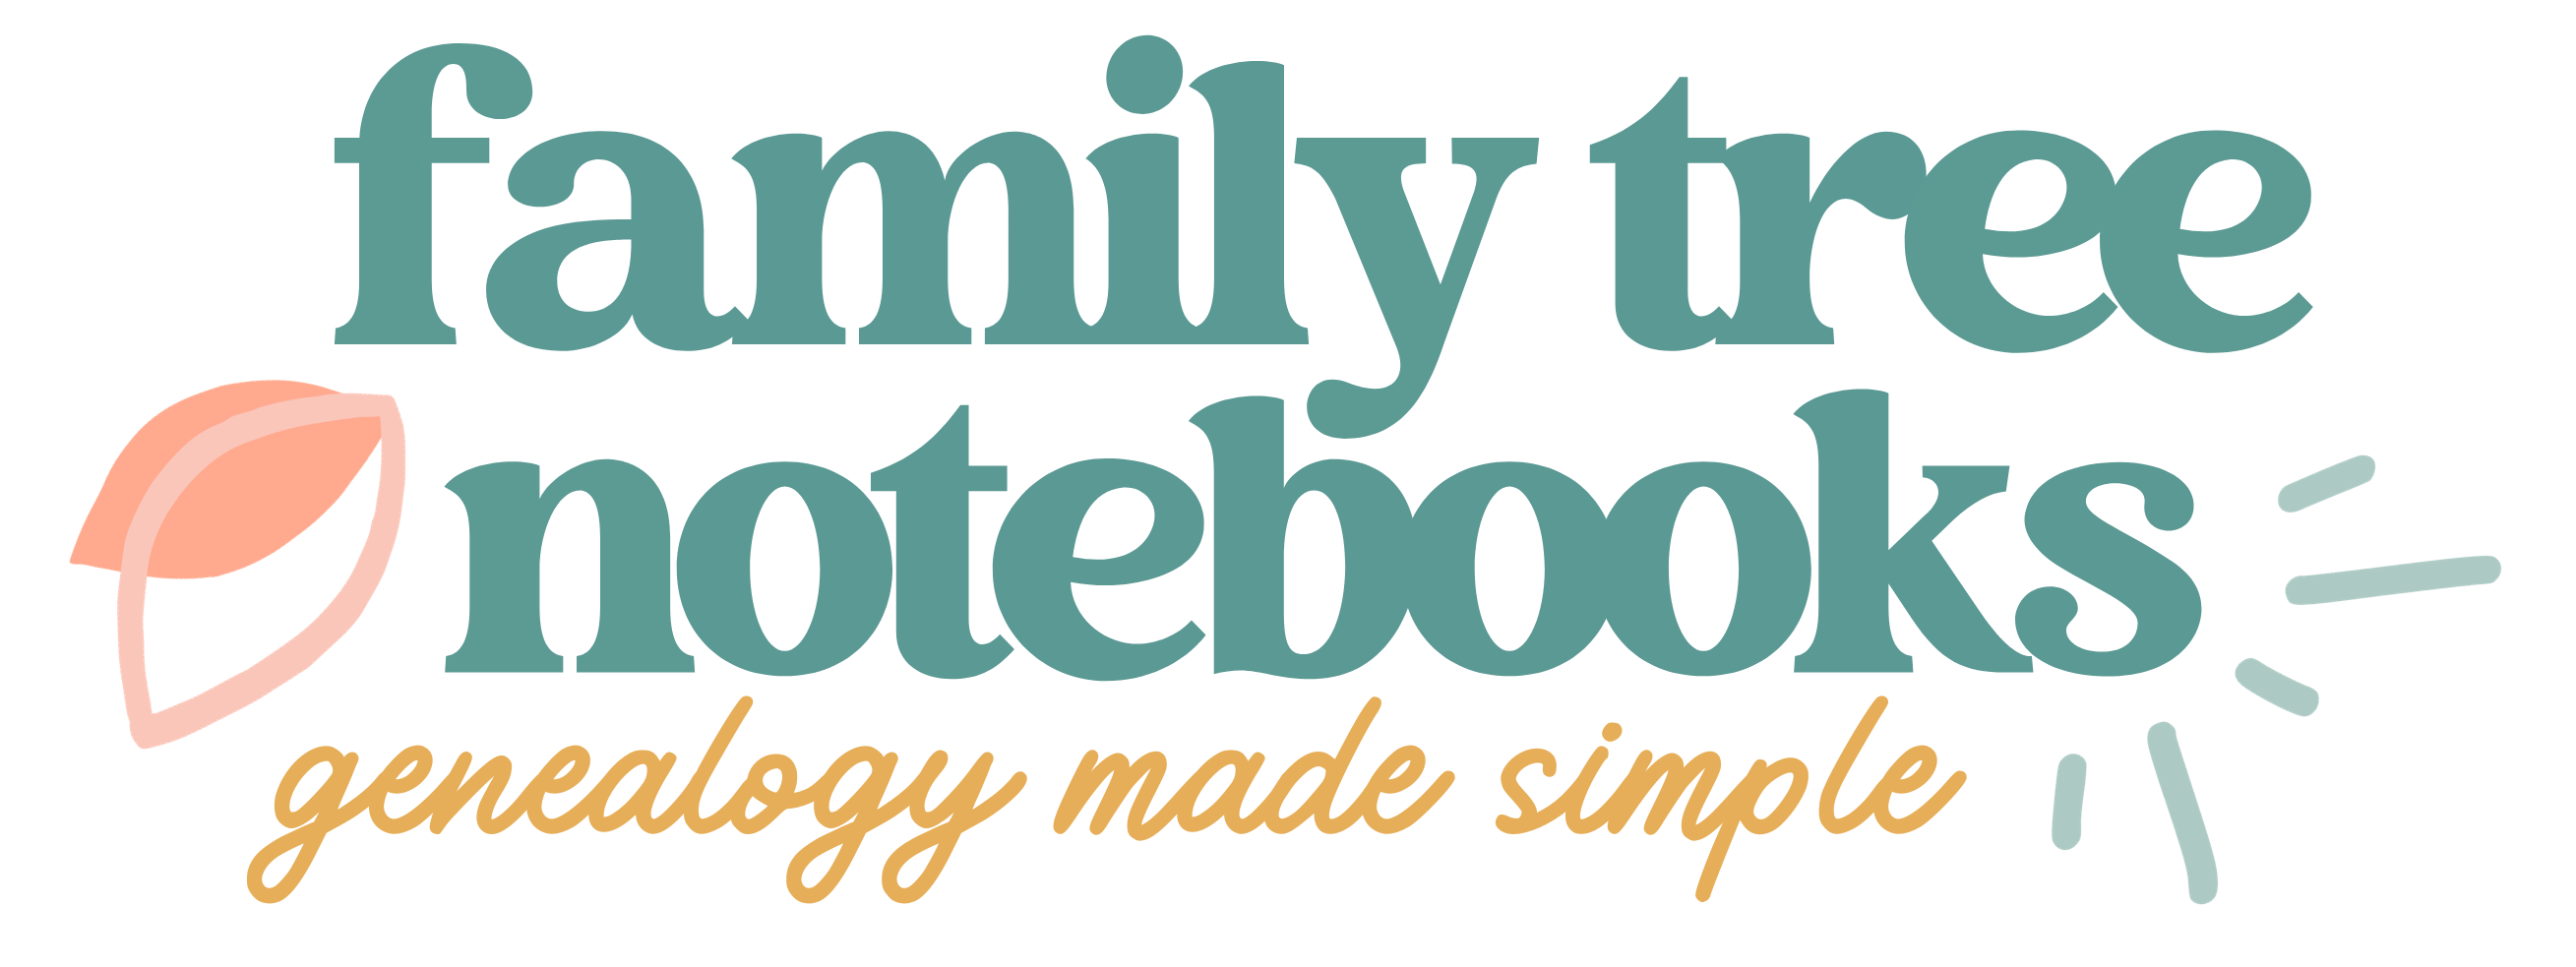 Family Tree Notebooks - #familytree  I haven't fully made the